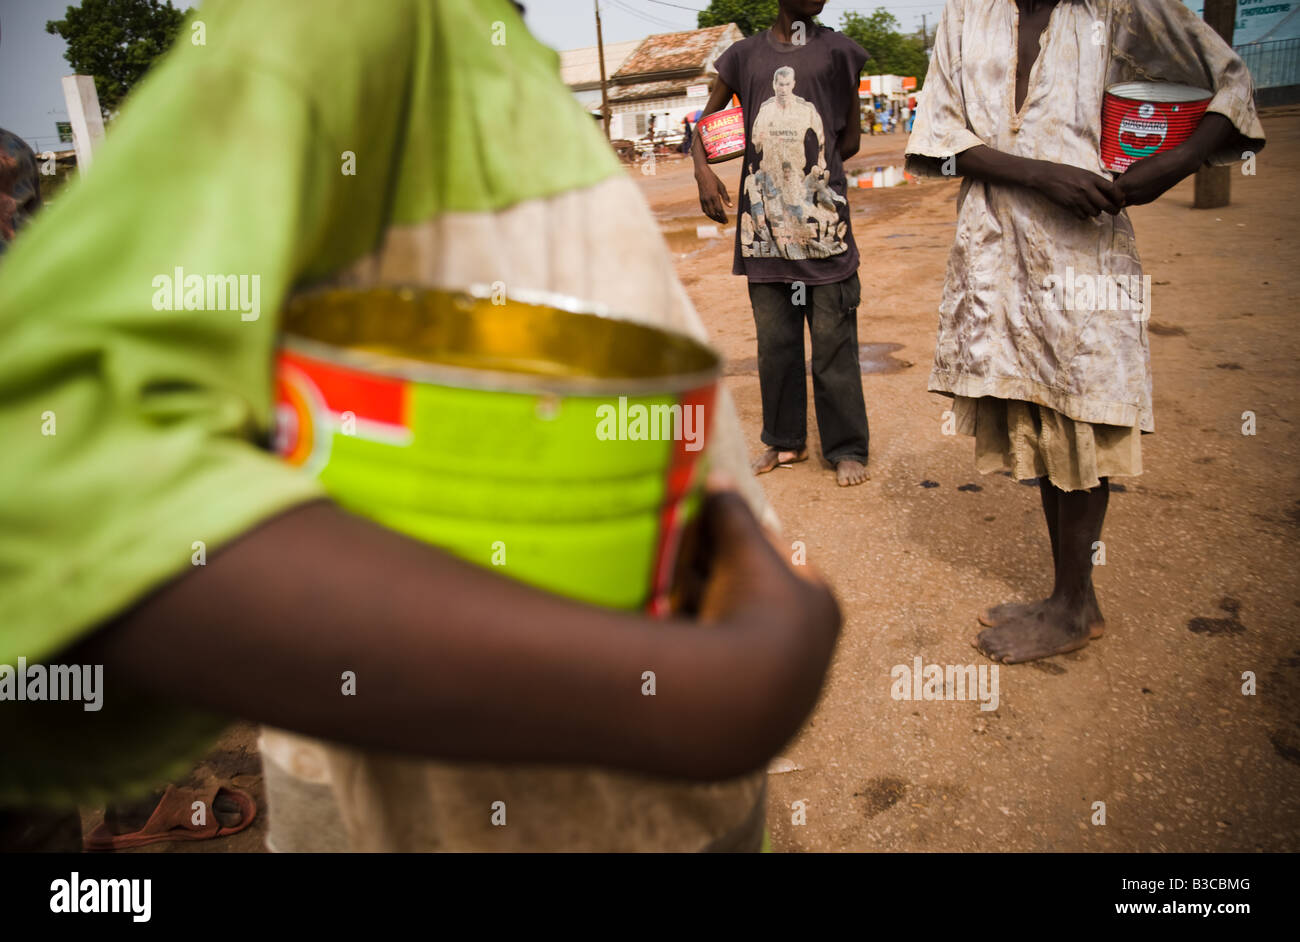 Jóvenes estudiantes de una escuela coránica a mendigar en las calles de Koungheul, Senegal Foto de stock